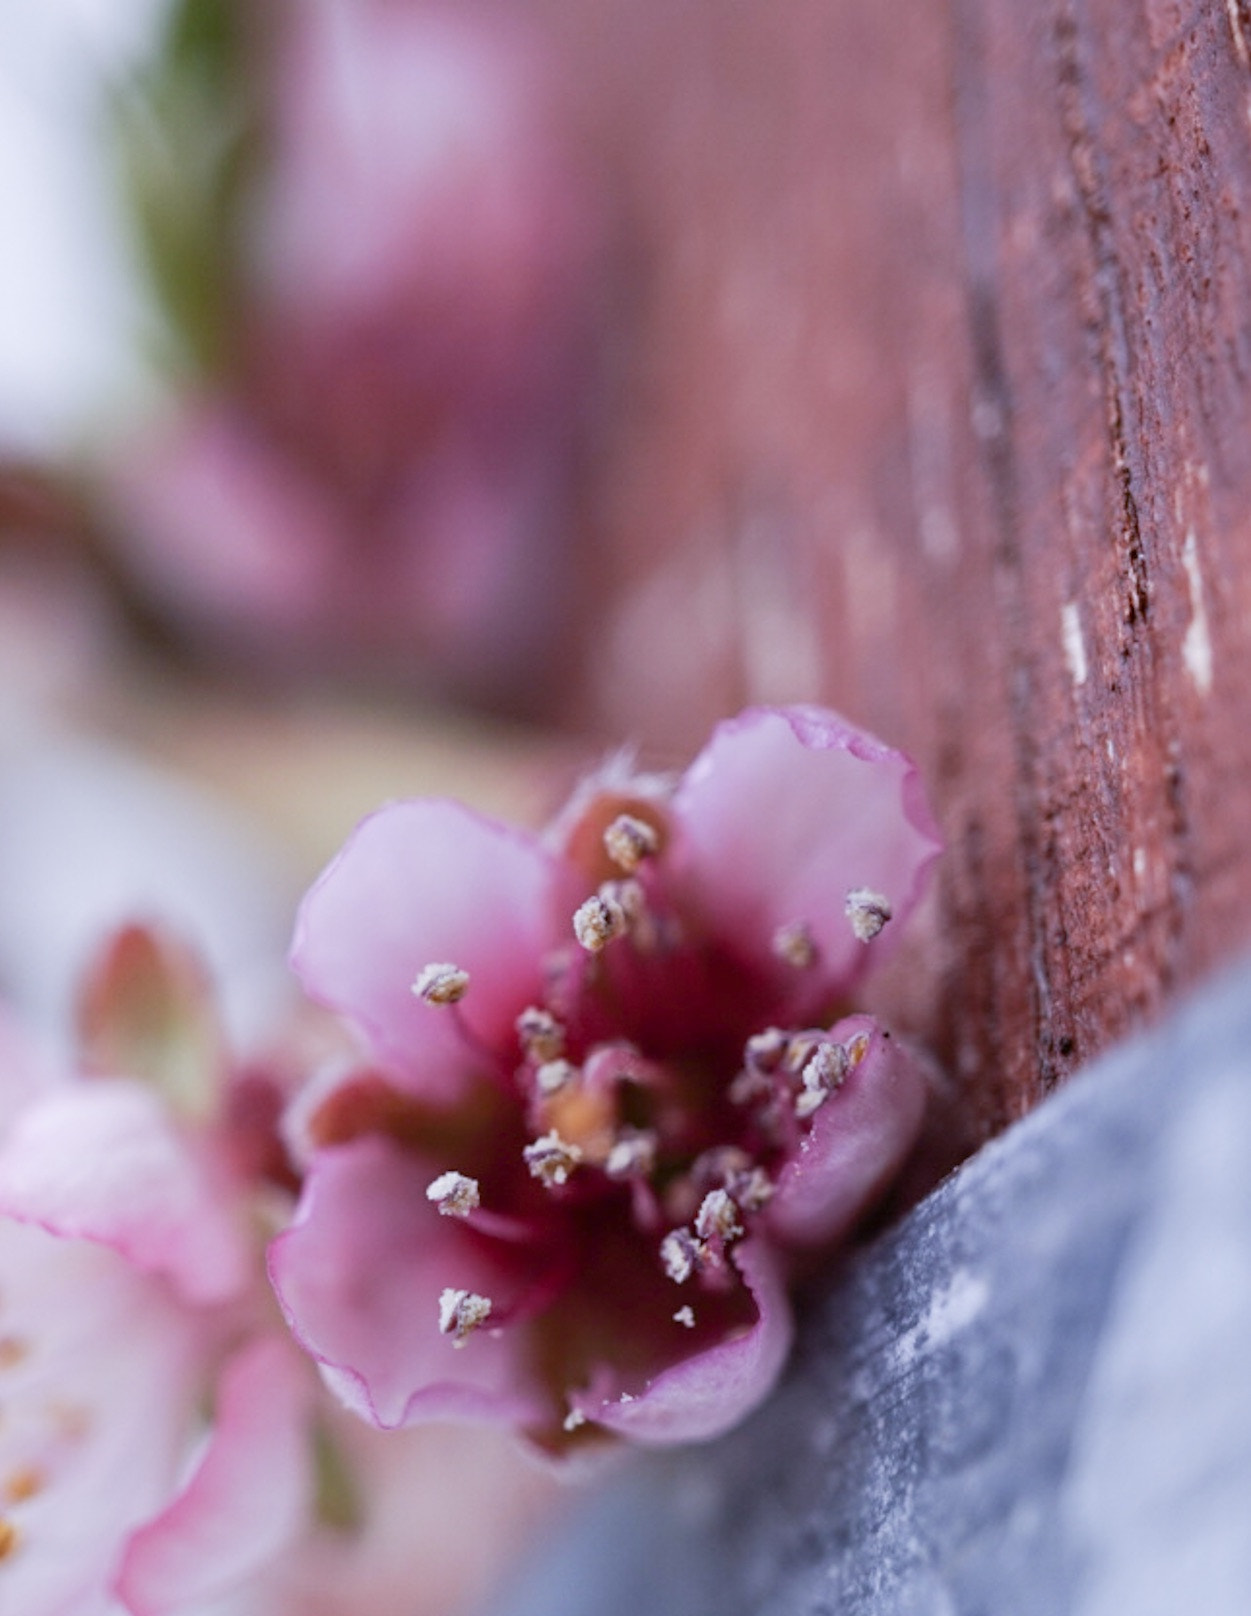 Sony Alpha QX1 sample photo. My peach blossom again! photography